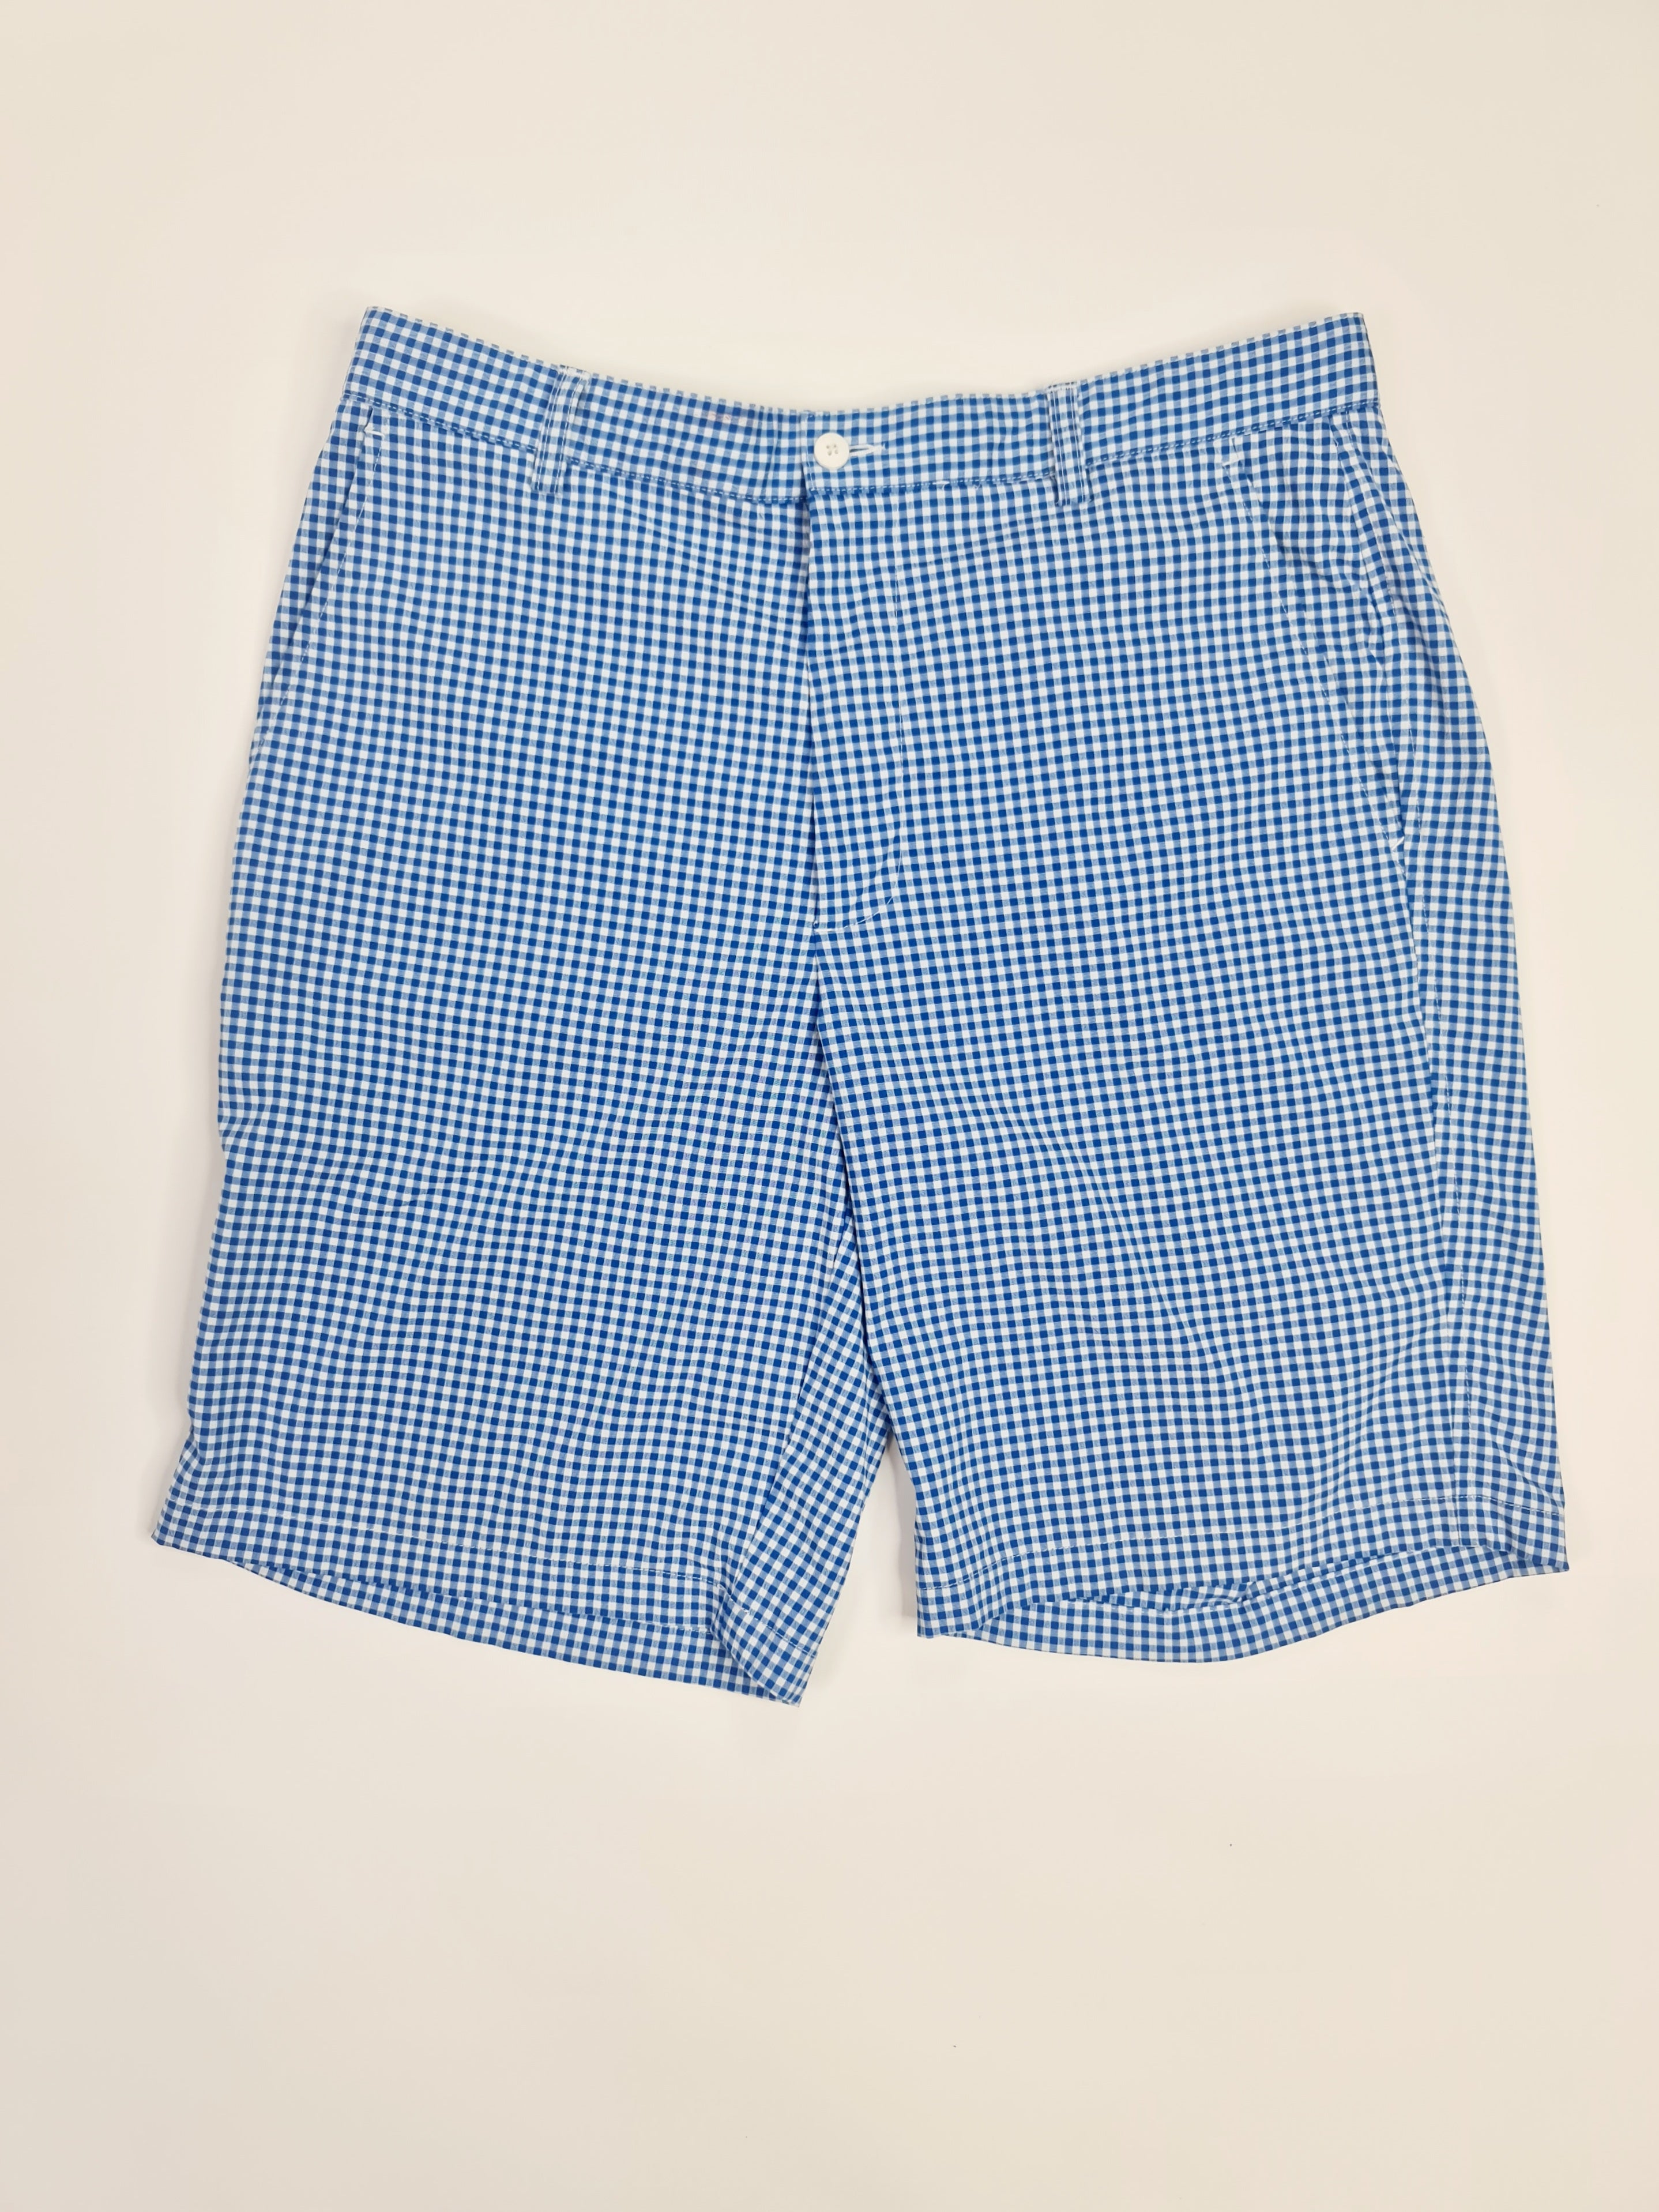 Pantalones cortos marca FootJoy - (Talla: 34)